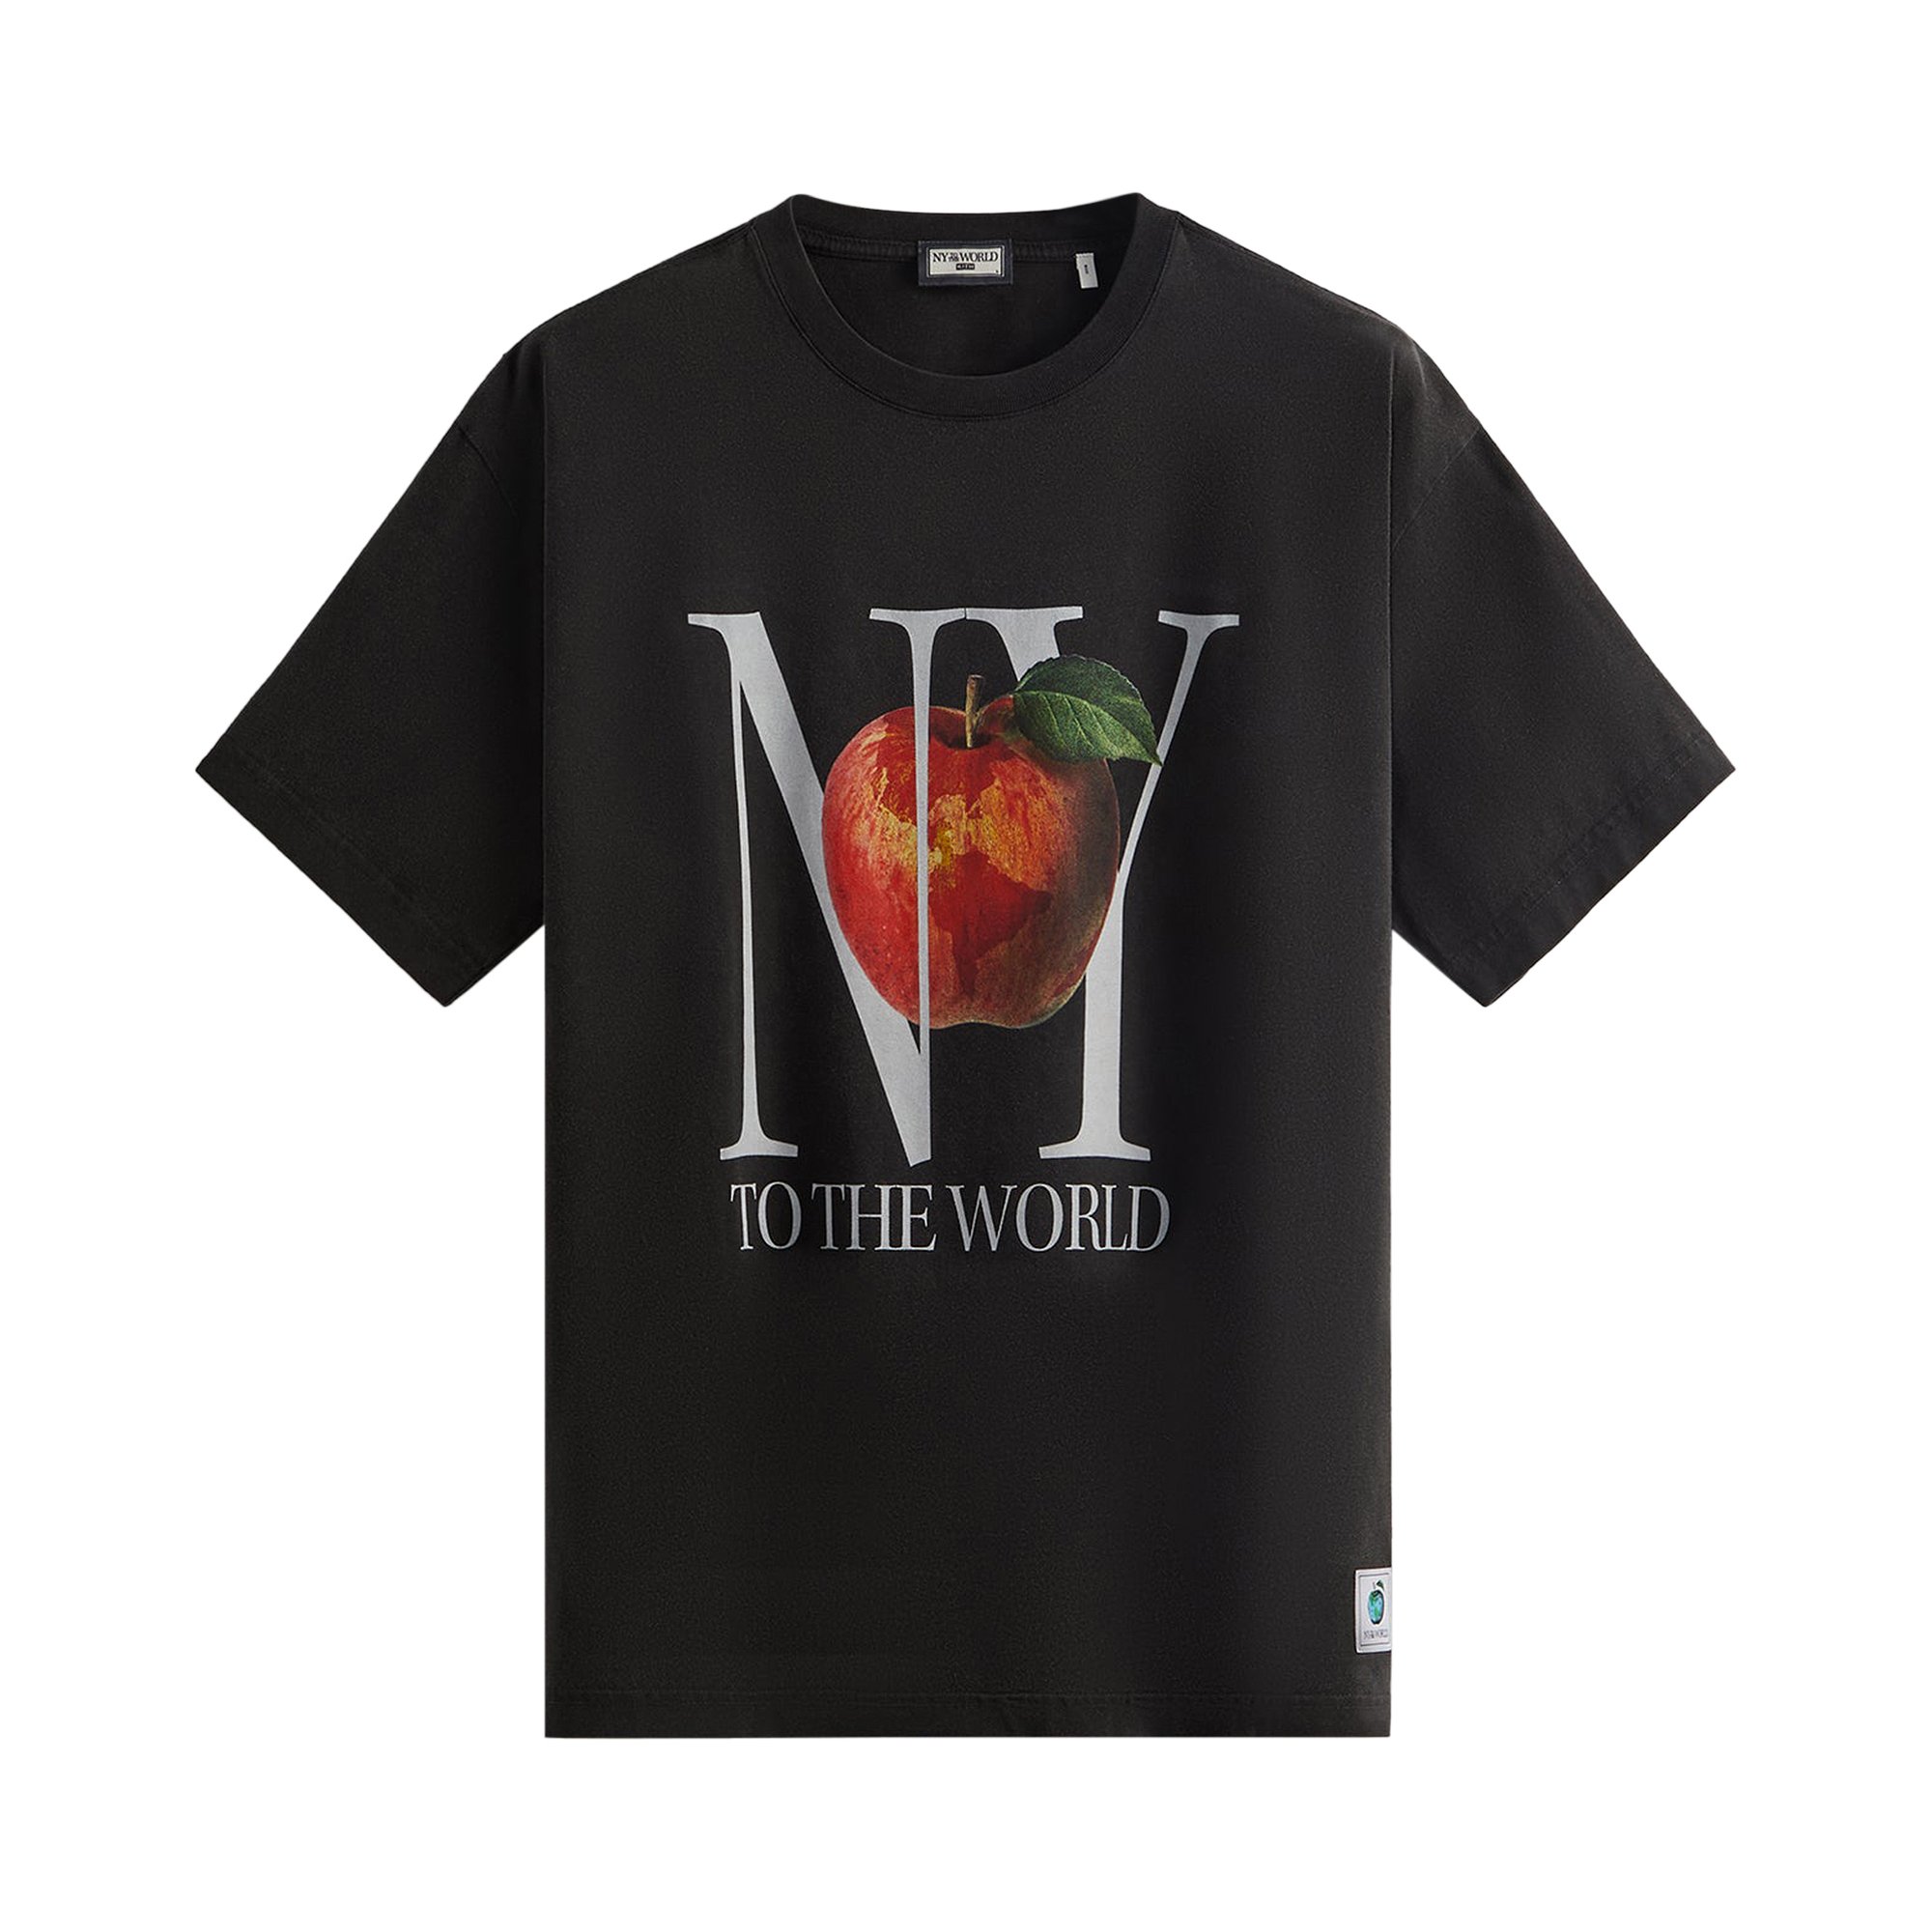 Винтажная футболка Kith New York To The World, черная